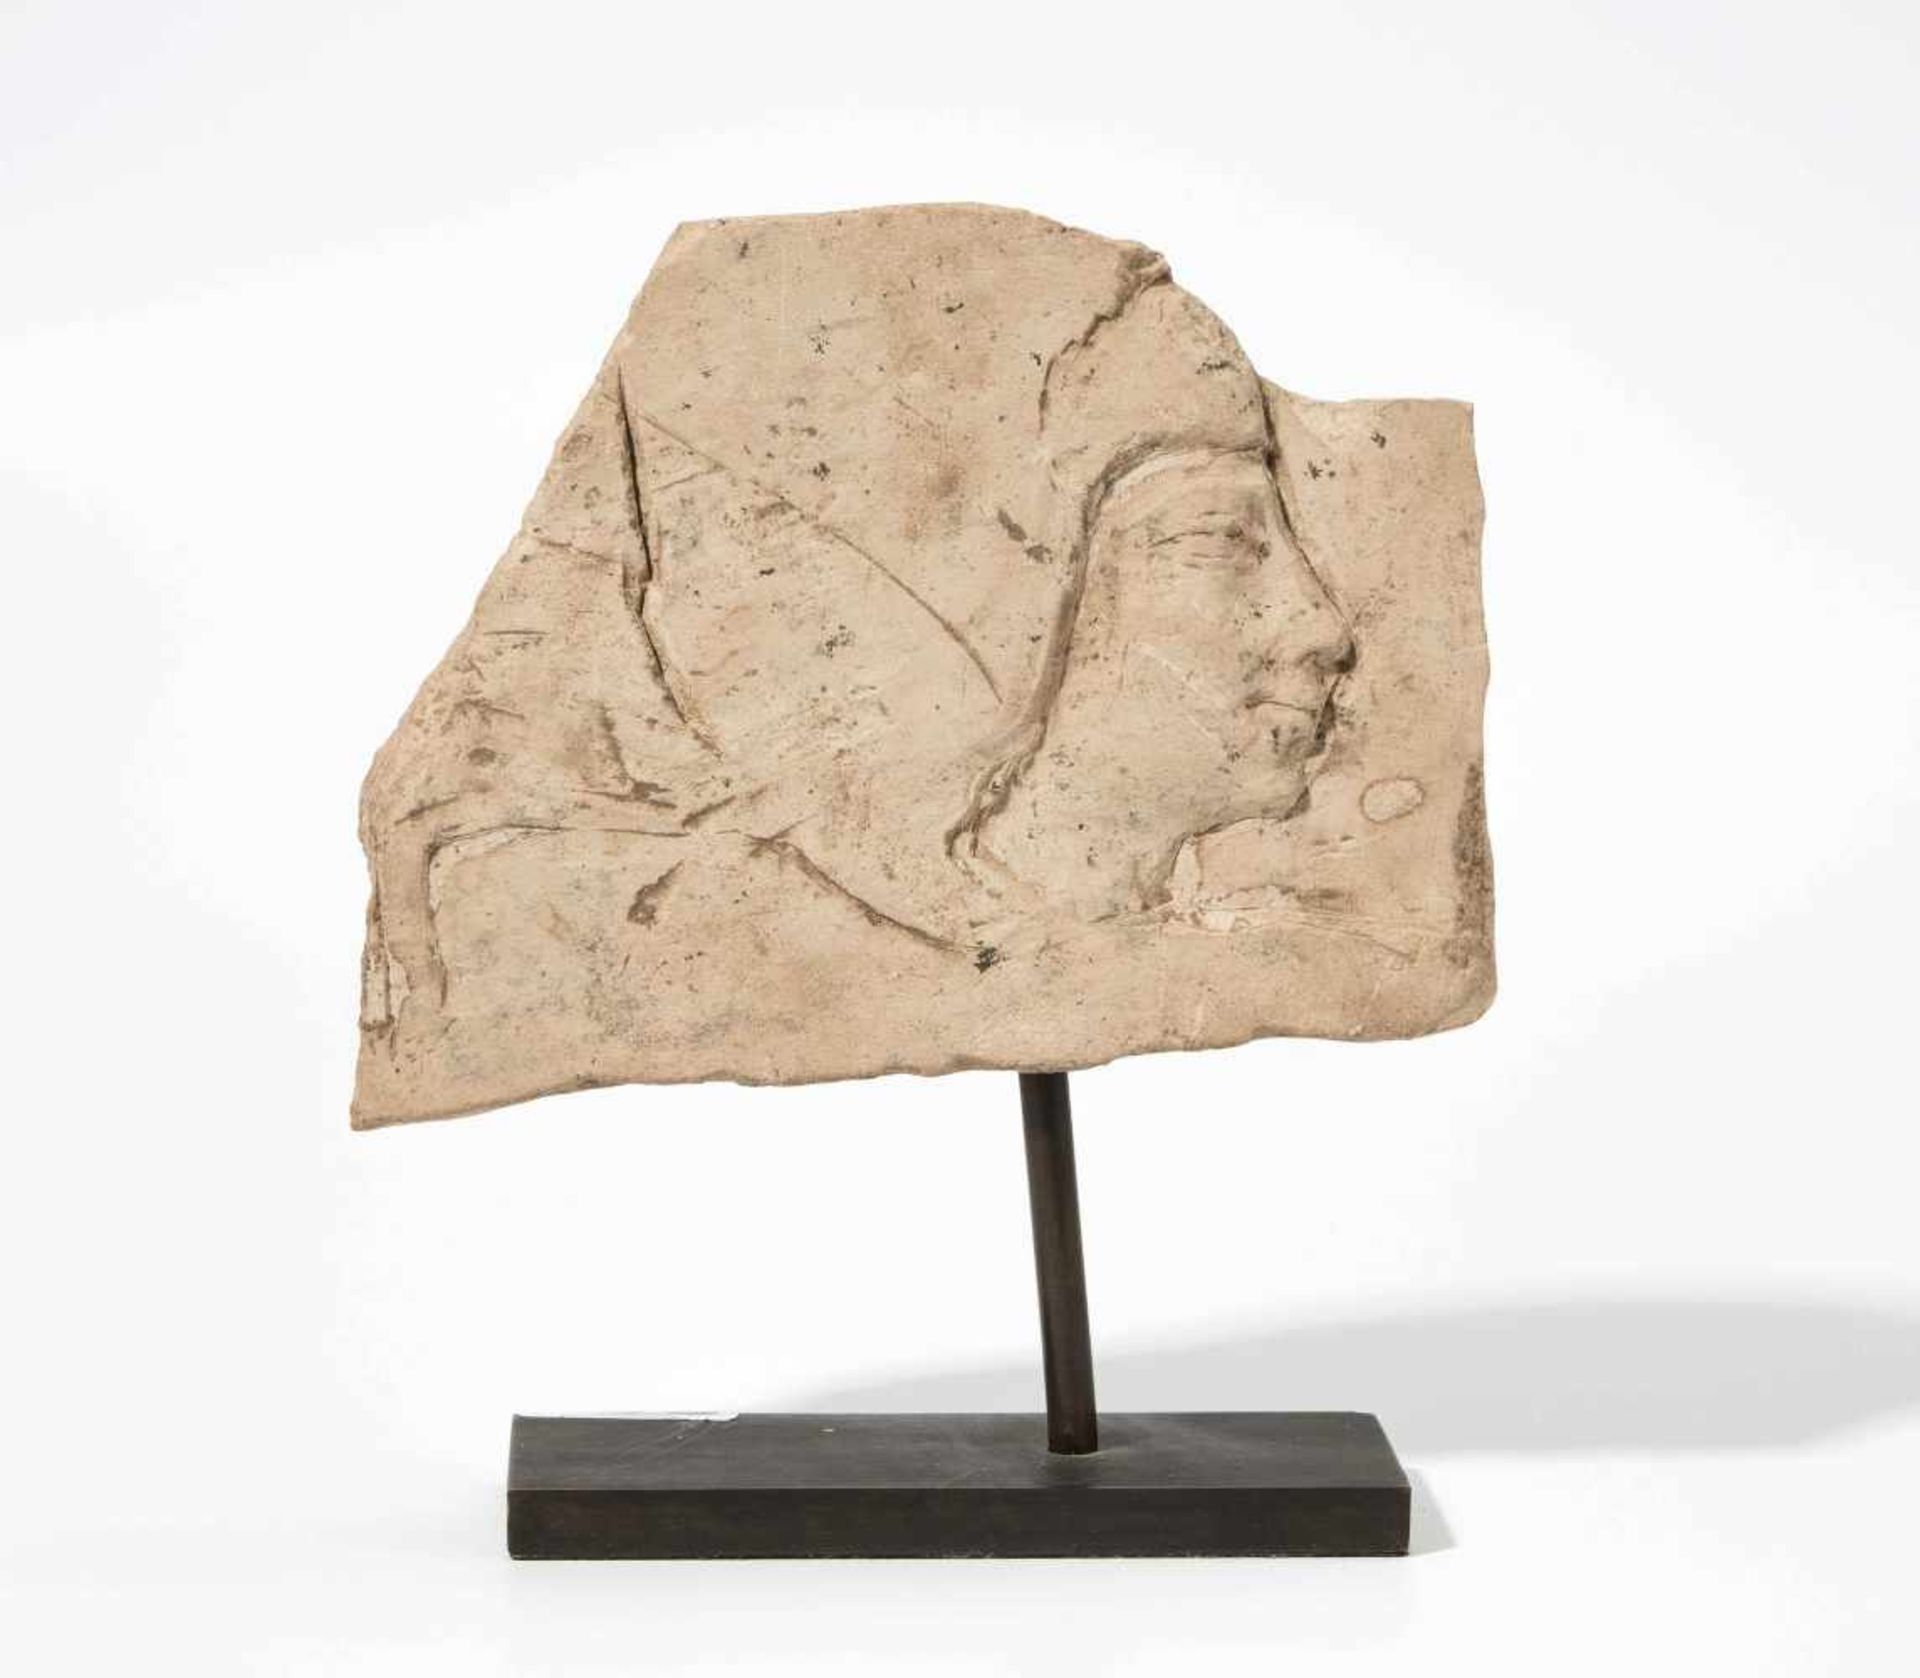 BildhauermodellAegypten, Spätzeit, um 300 v.C. Kalkstein. Bildhauerstudie mit Darstellung eines